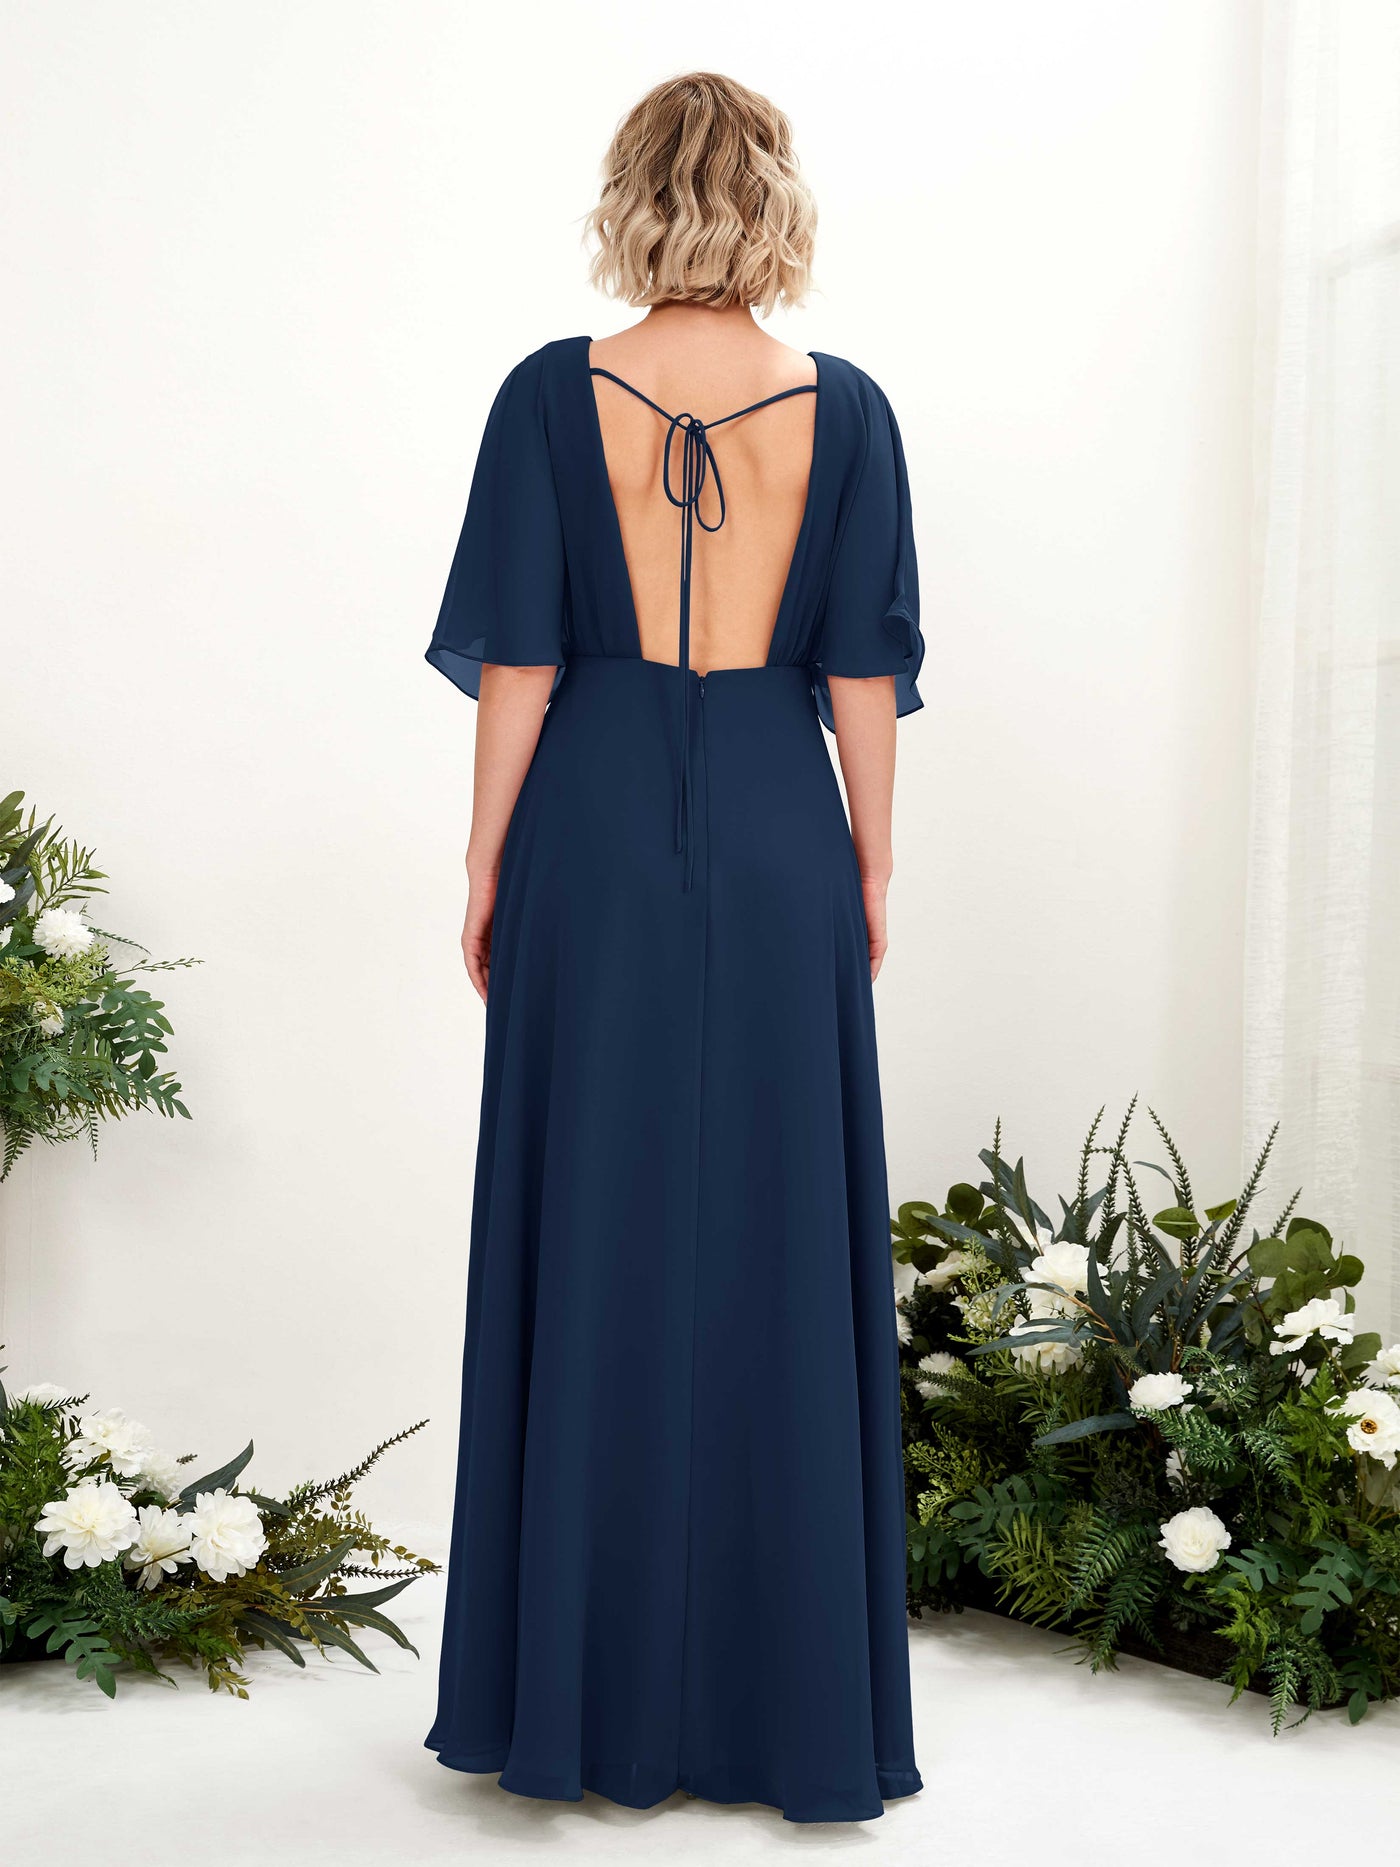 V-neck 1/2 Sleeves Chiffon Bridesmaid Dress (81225113)#color_navy